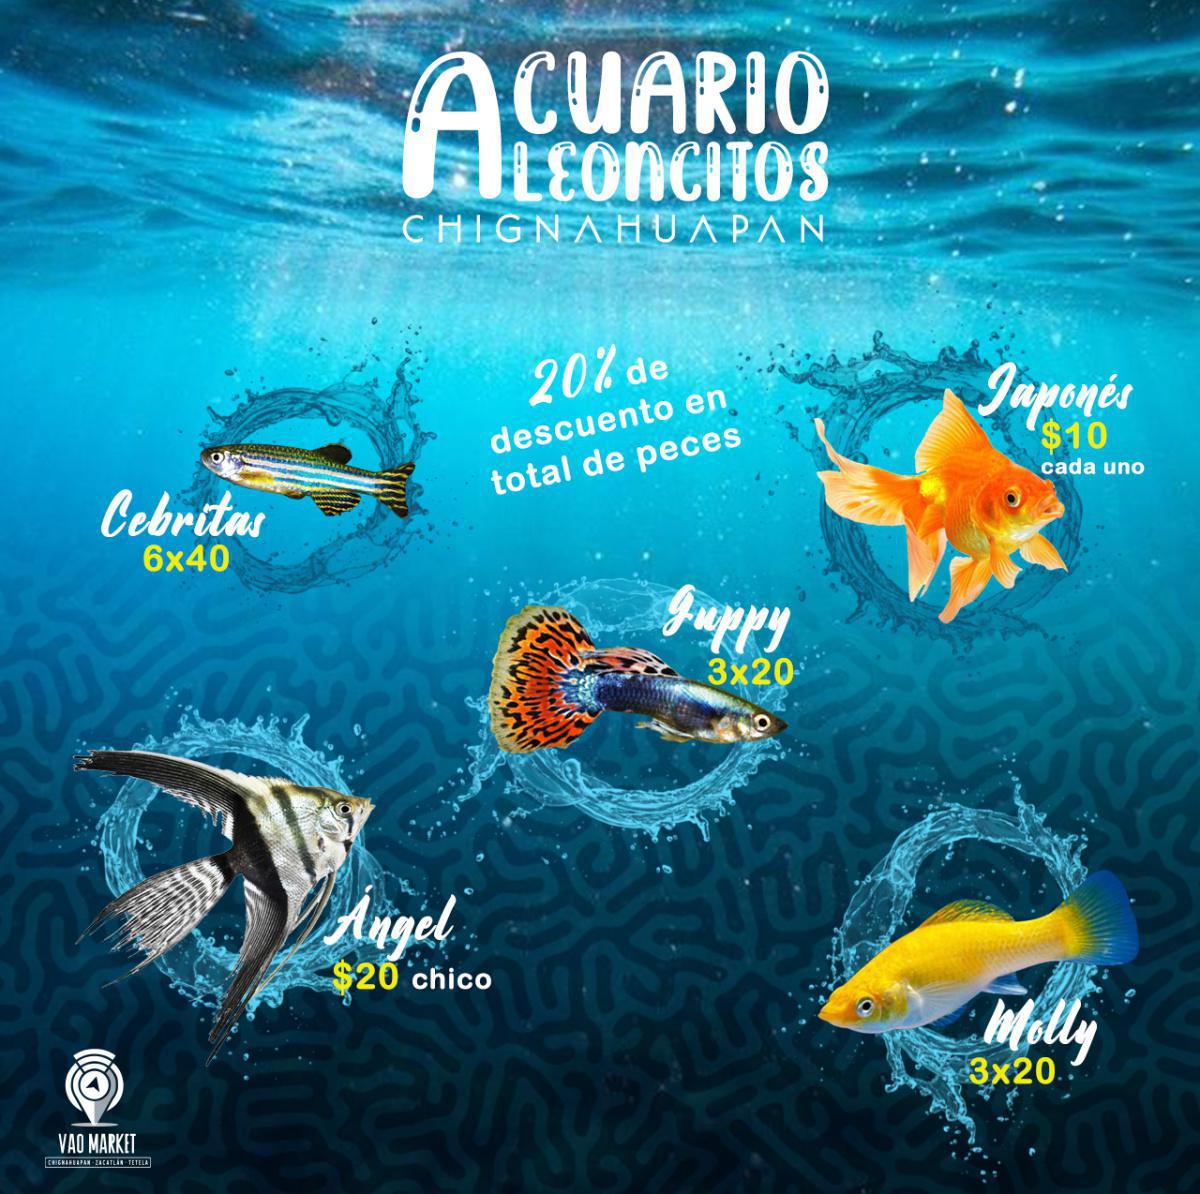 Acuario - LEONCITOS -